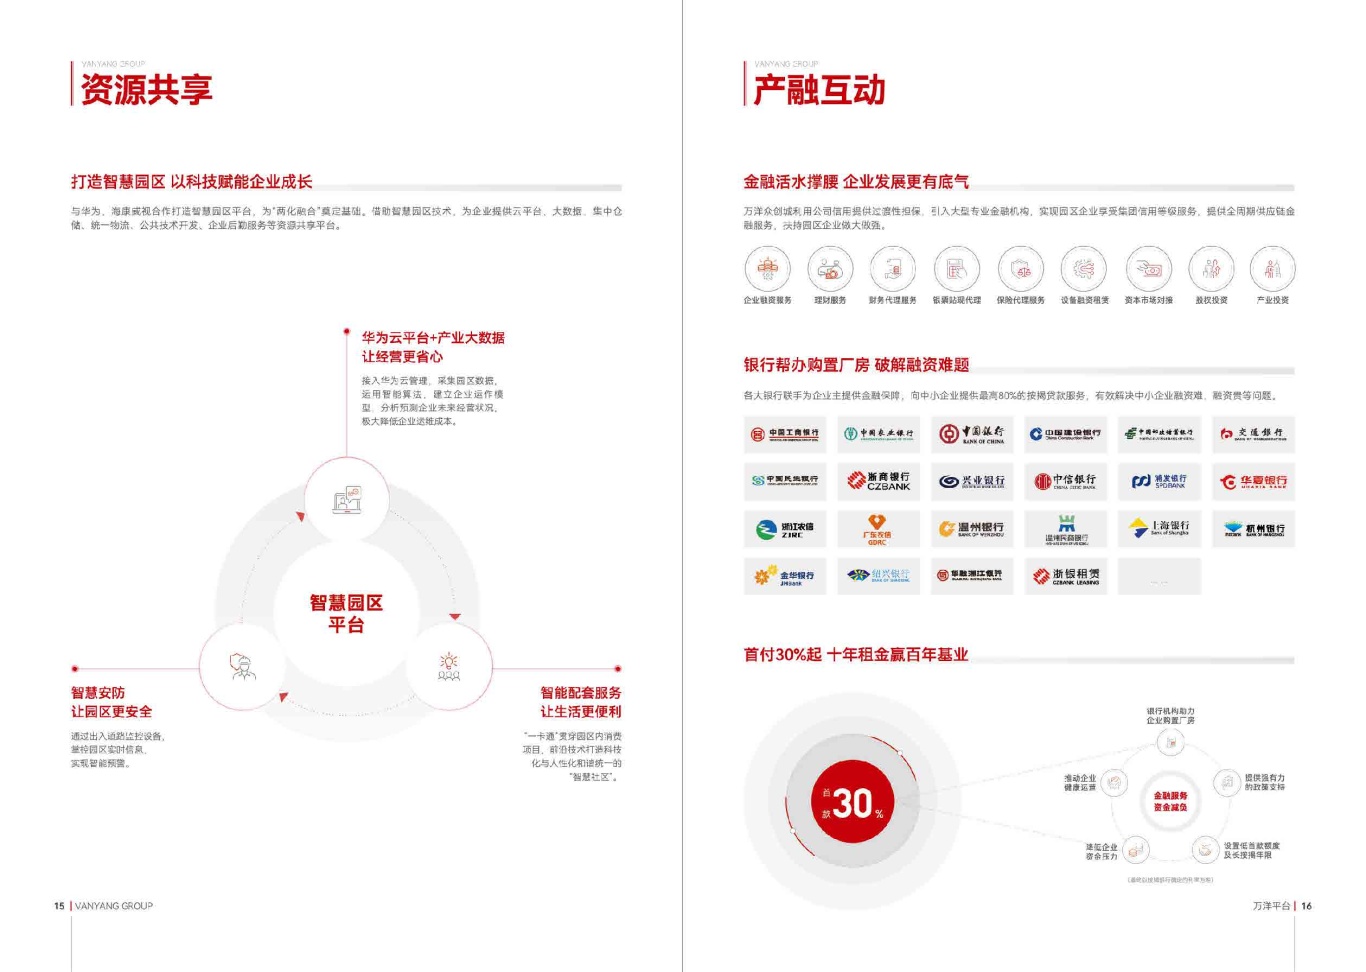 民营企业 500 强品牌宣传册设计图8